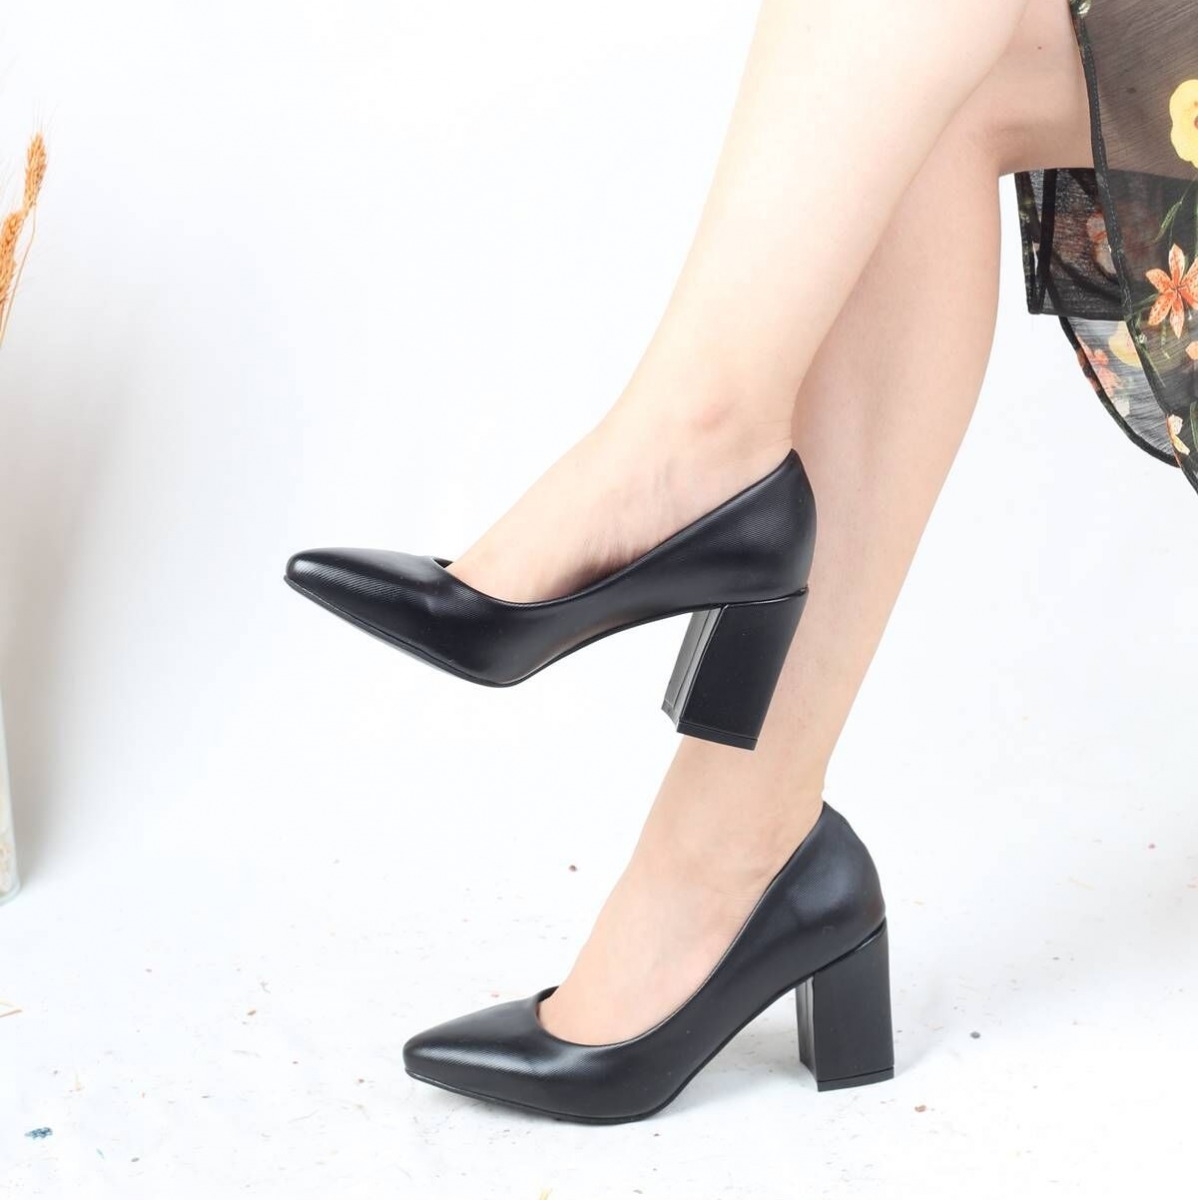 Flo Parlak Siyah Kalın Köşeli Topuk Stiletto Kadın Ayakkabı - Erkly. 1